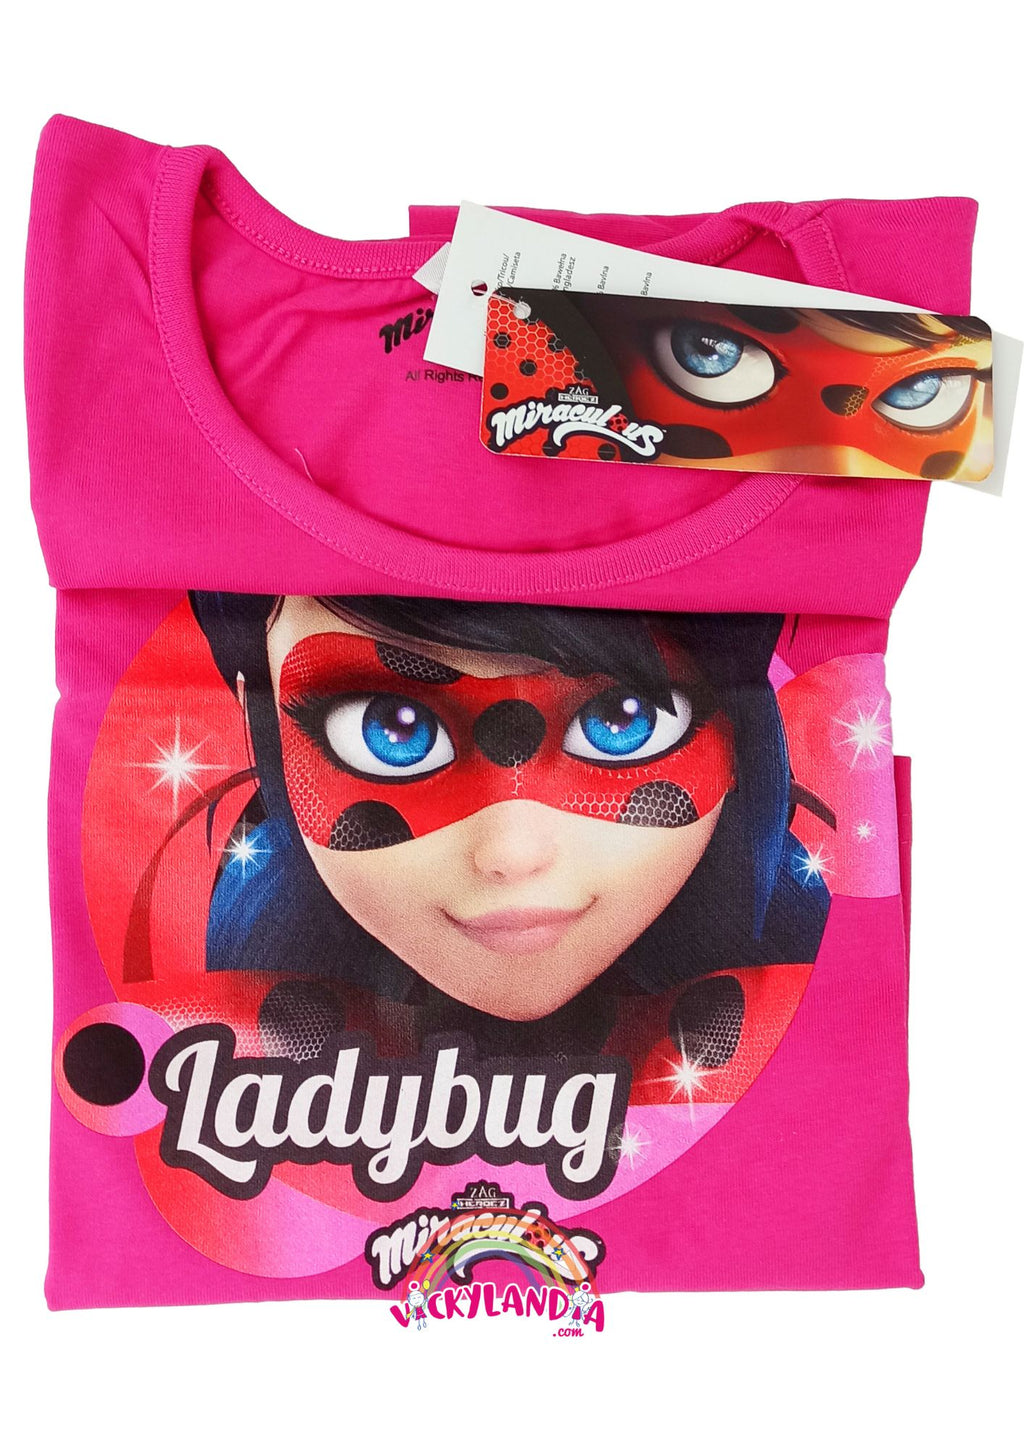 Camiseta Ladybug miraculous marittene Vickylandia